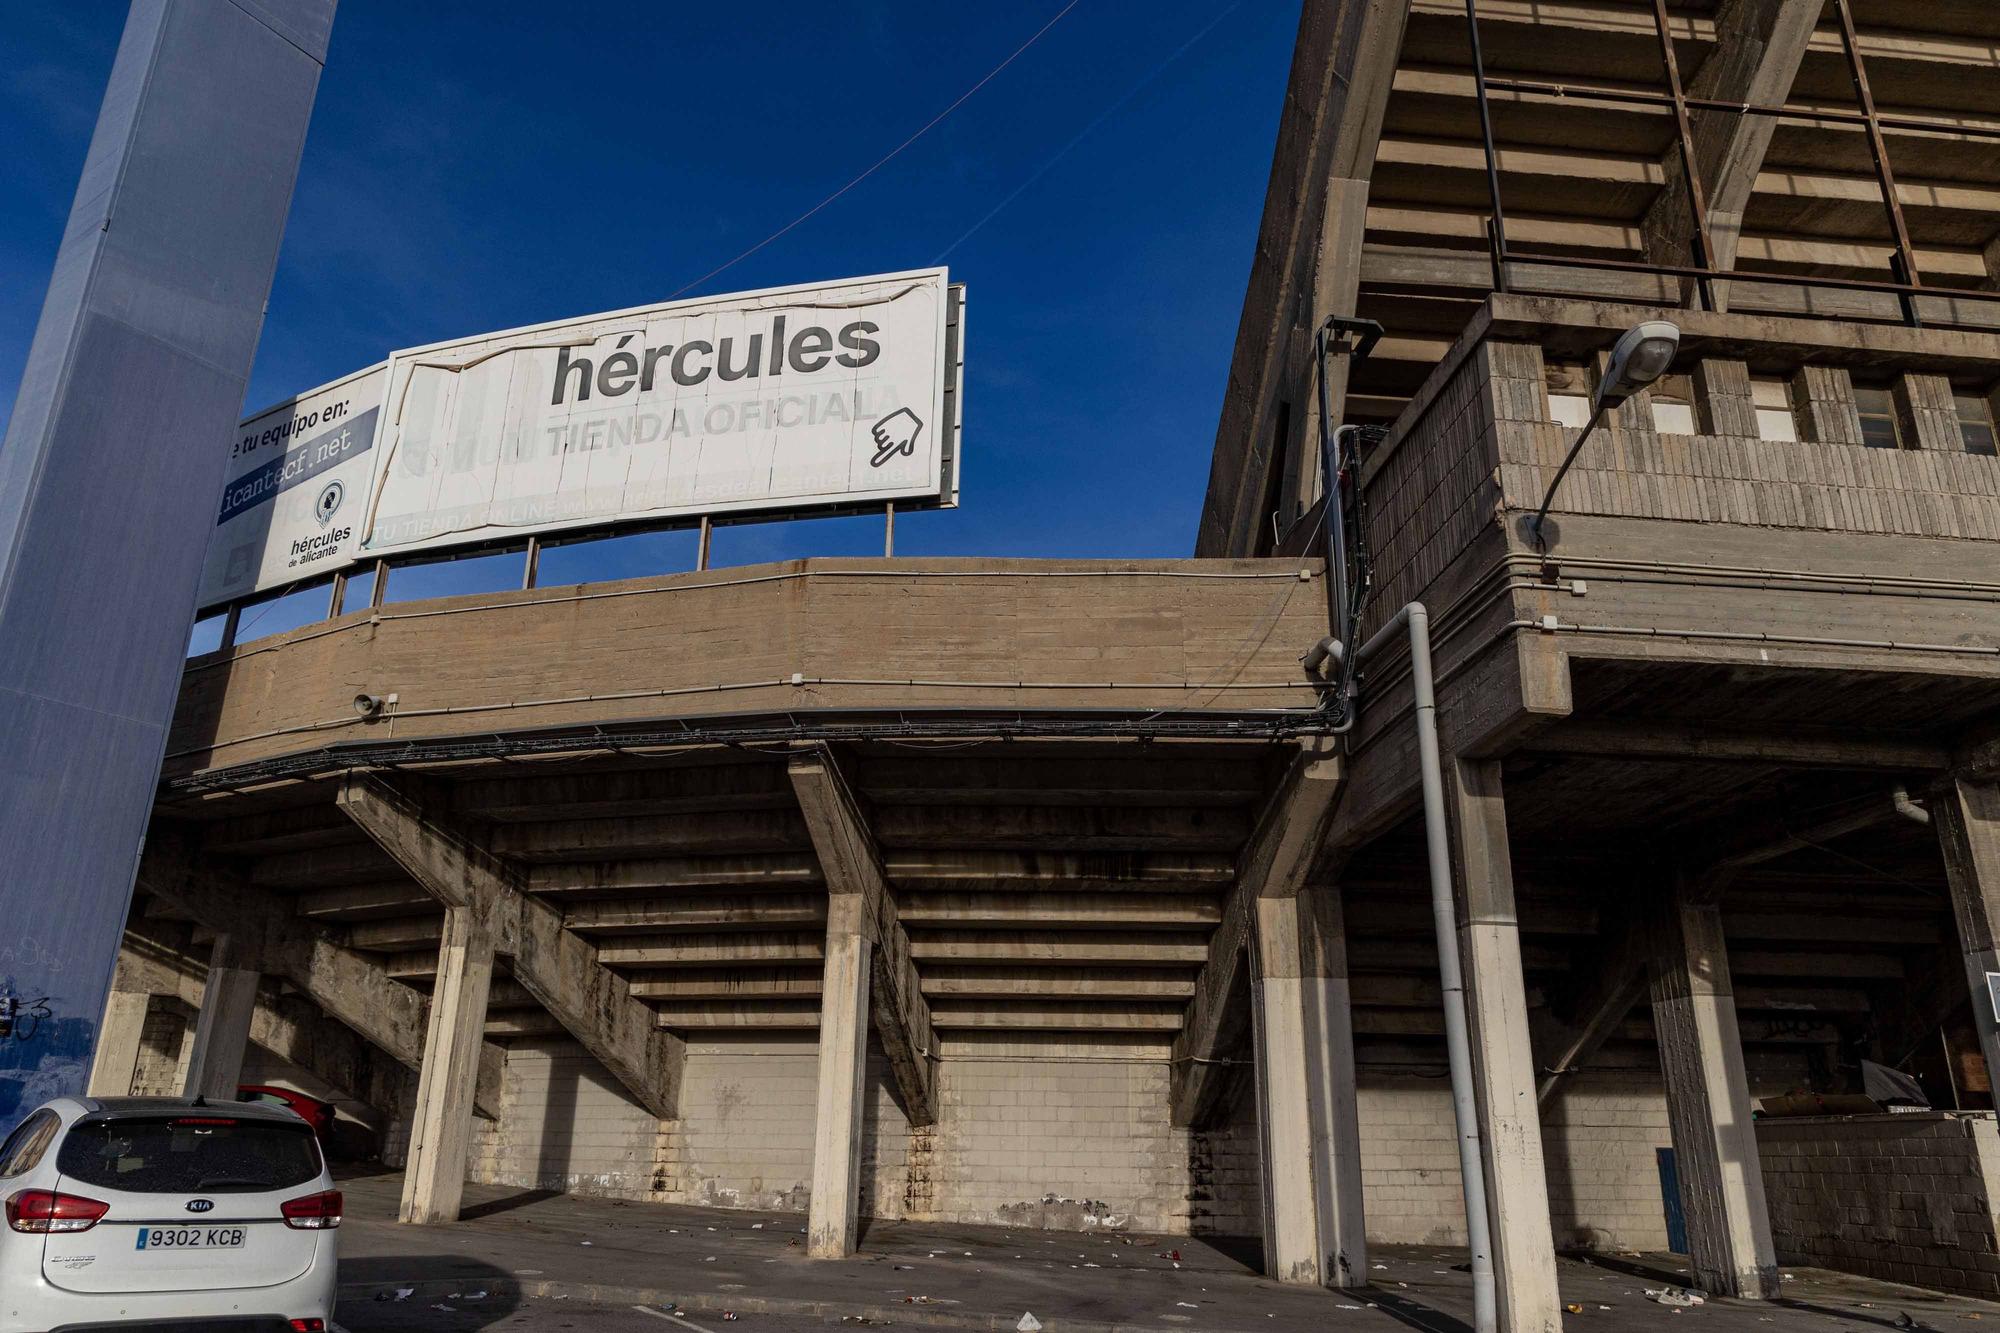 Este es el lamentable estado de los alrededores del estadio Rico Pérez del Hércules de Alicante